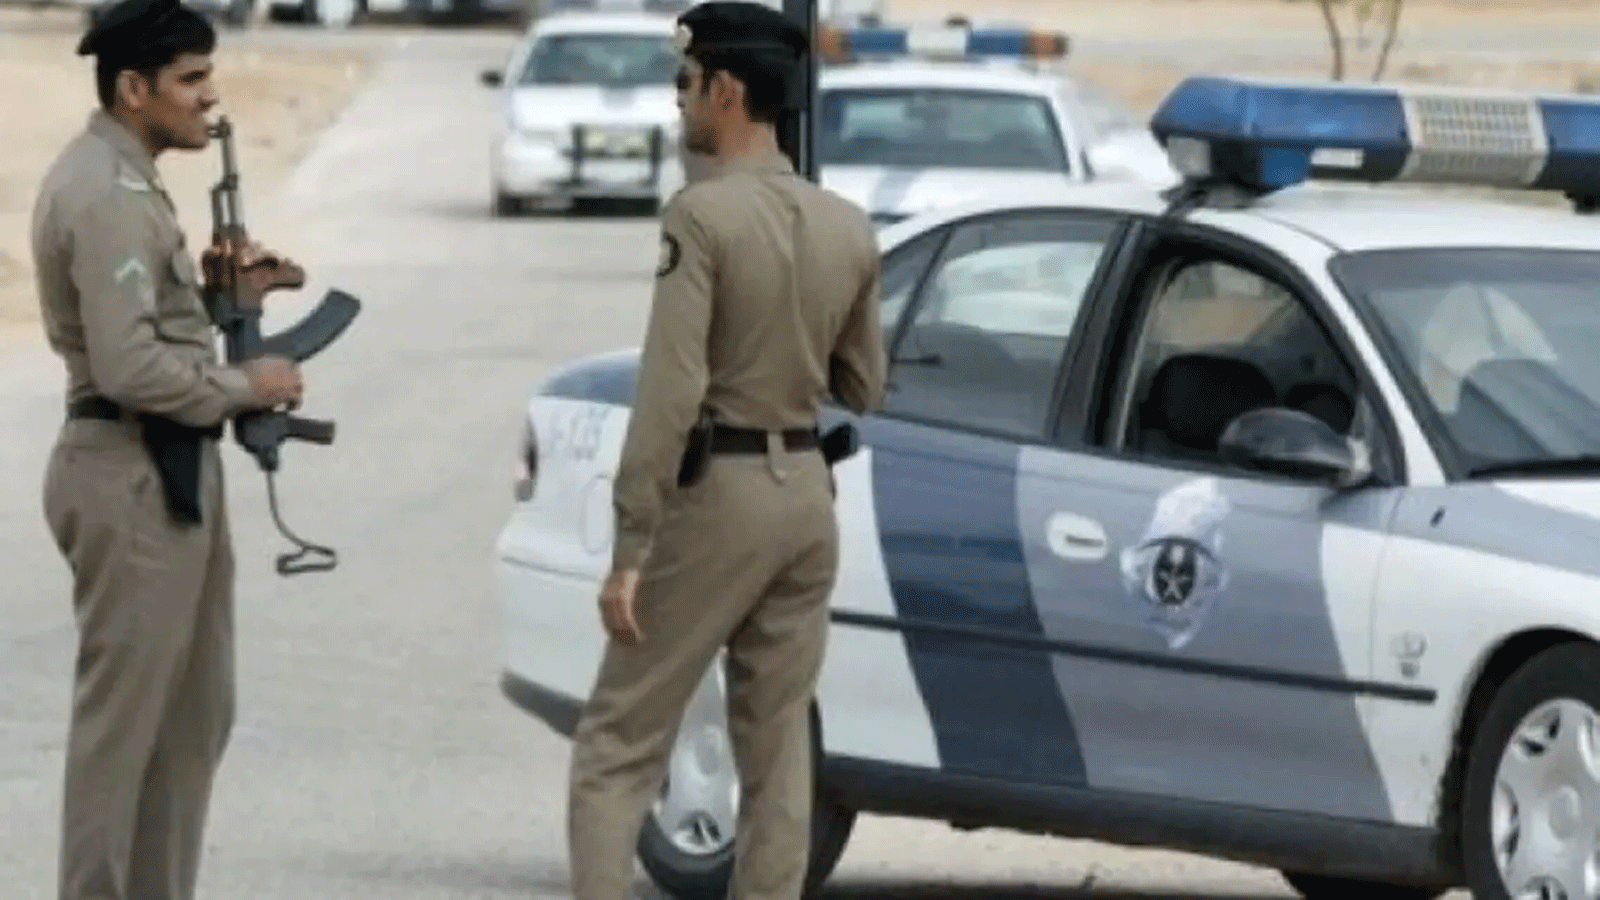 قانون مكافحة الإرهاب السعودي يمنح قوات الأمن الحق في اعتقال واحتجاز المشتبه بهم لمدة تصل إلى ستة أشهر مع إمكانية تمديد الحبس ستة أشهر أخرى.